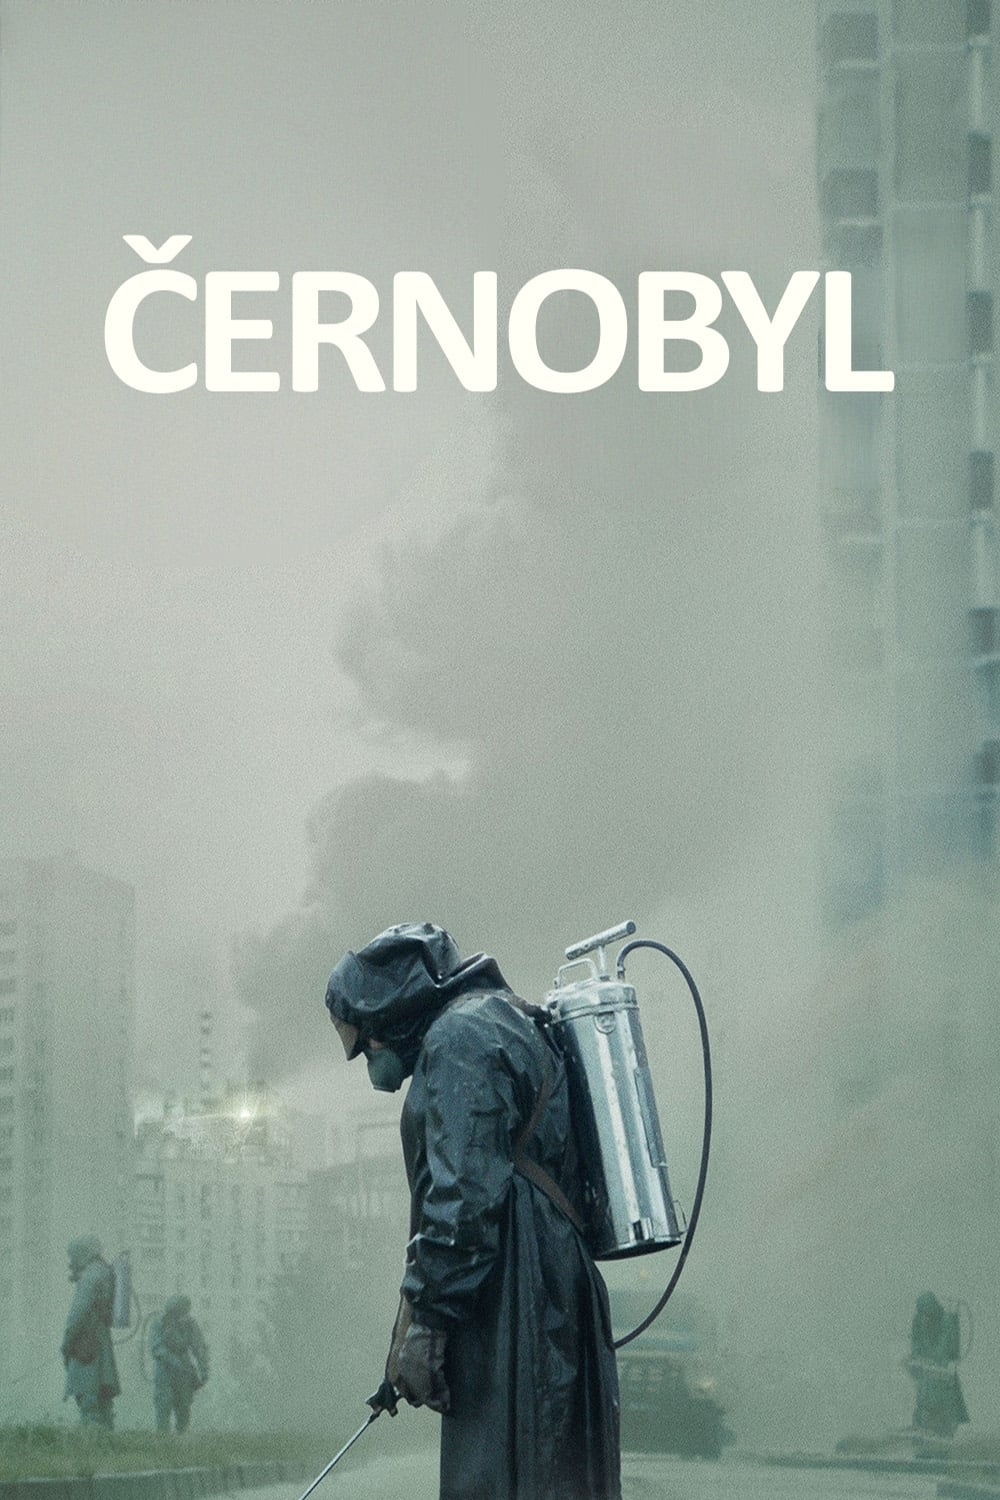 Plakát pro film “Černobyl”